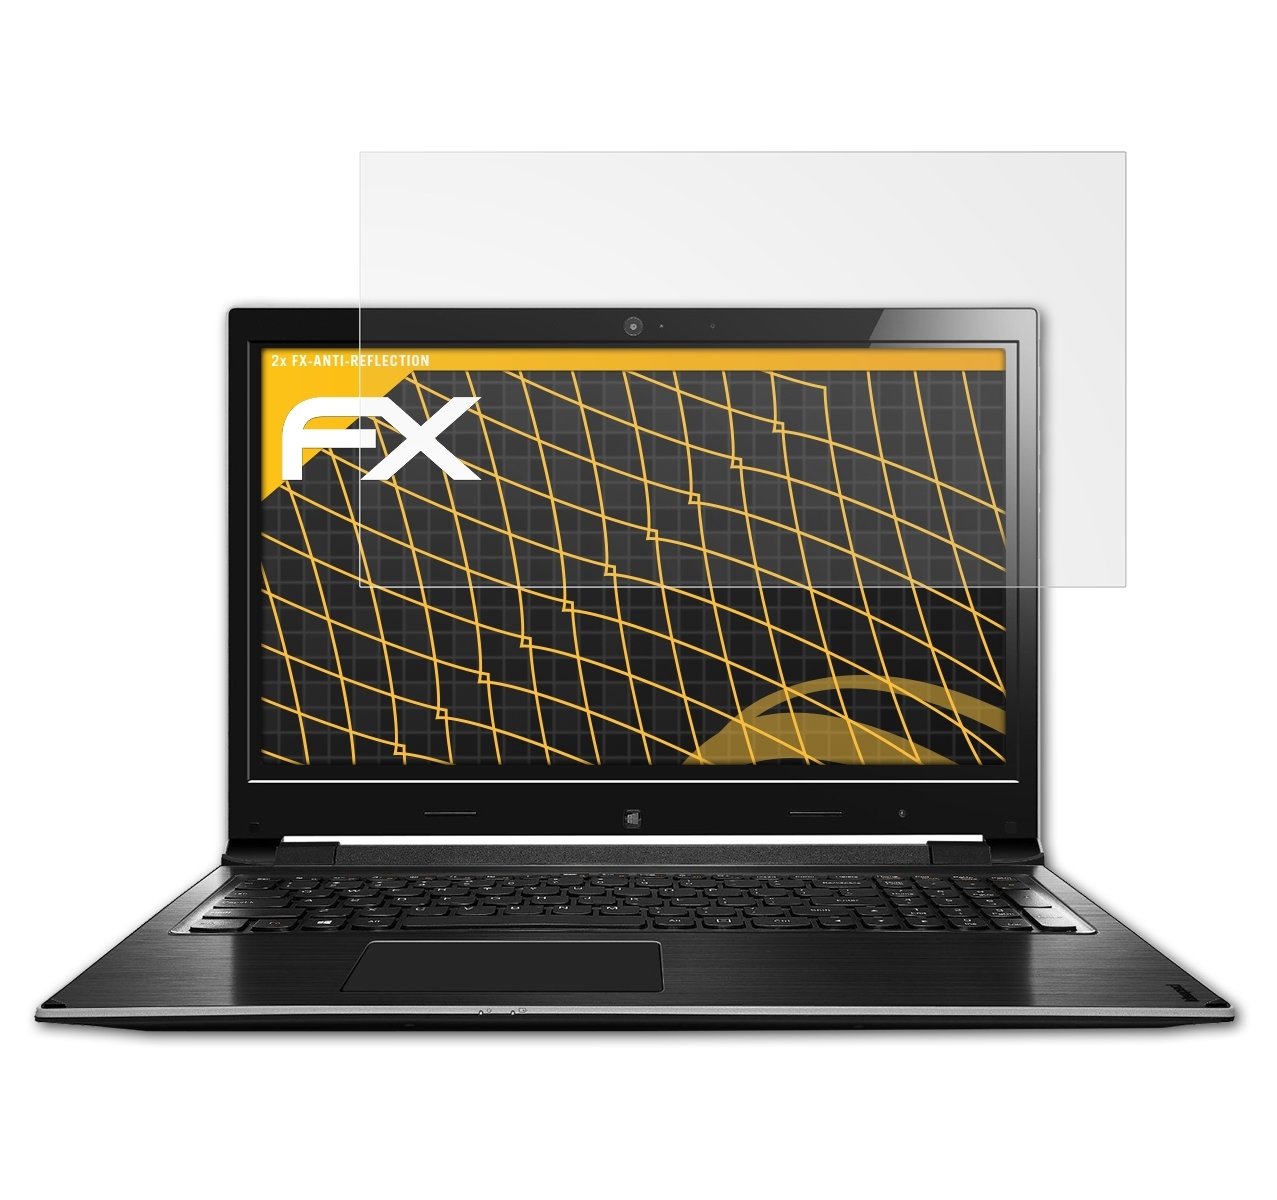 ATFOLIX 2x FX-Antireflex Displayschutz(für Lenovo 15D) 15 IdeaPad Flex 